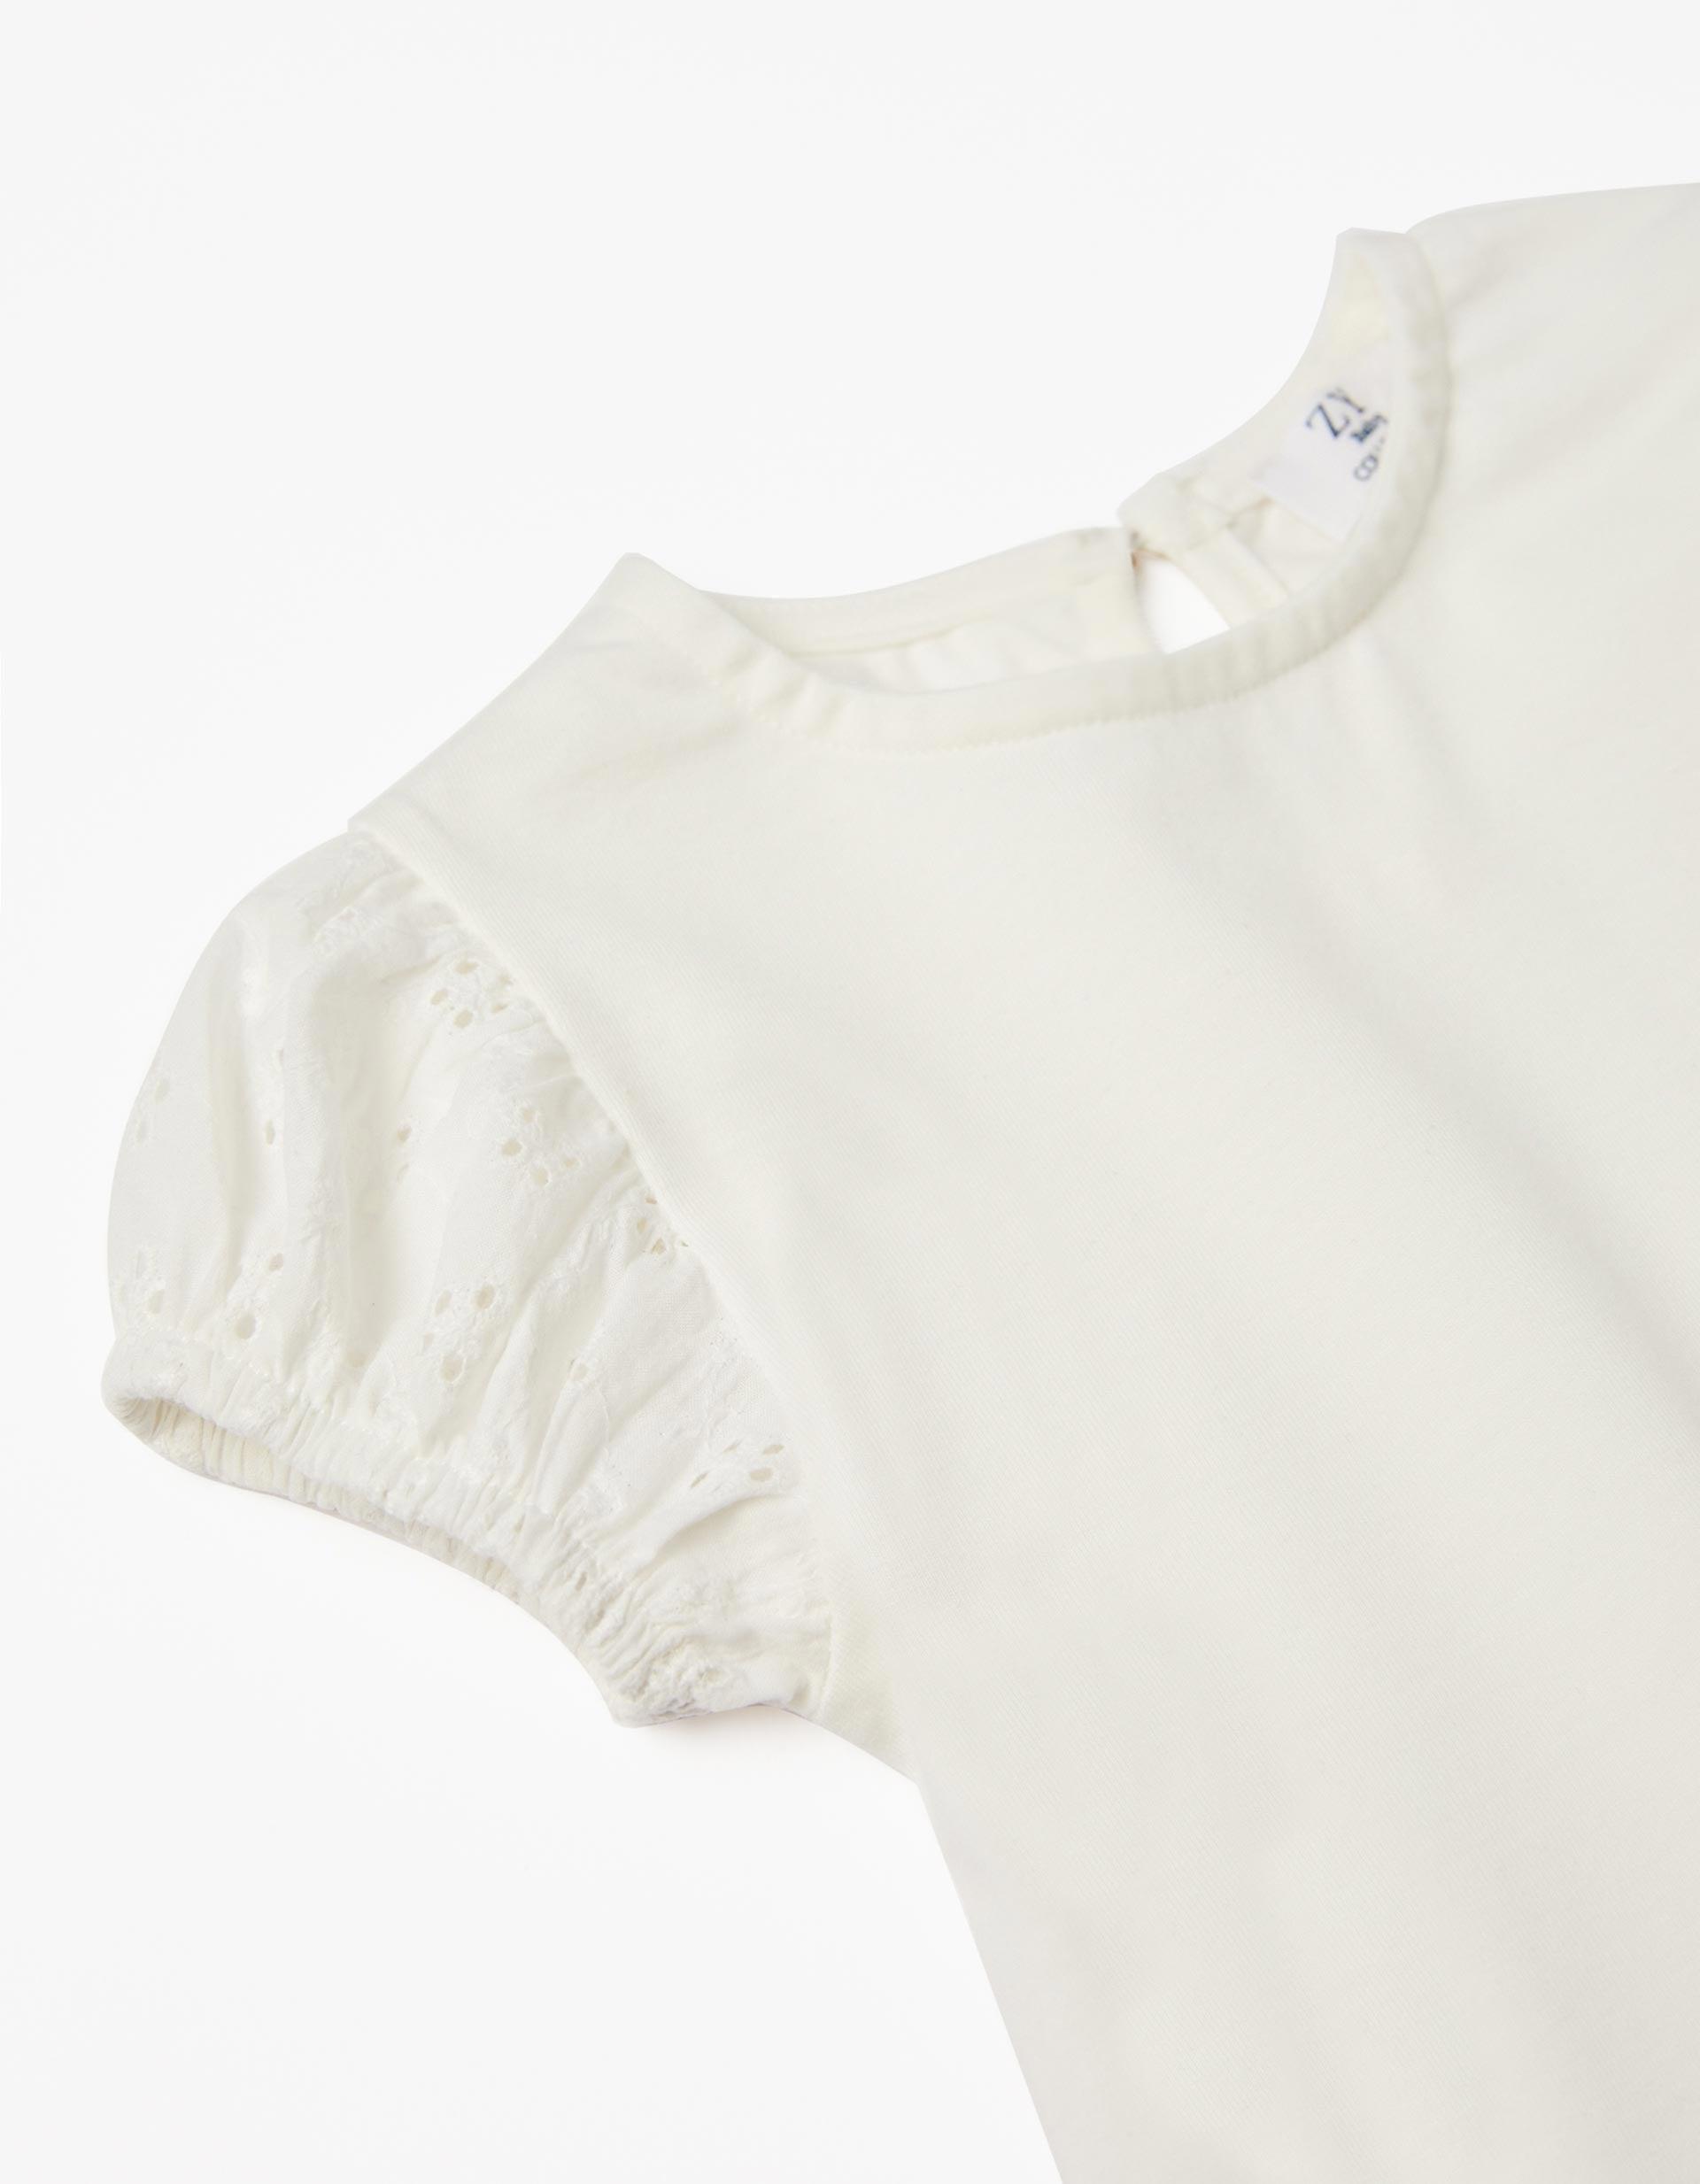 Zippy - White Frilly T-Shirt, Baby Girls